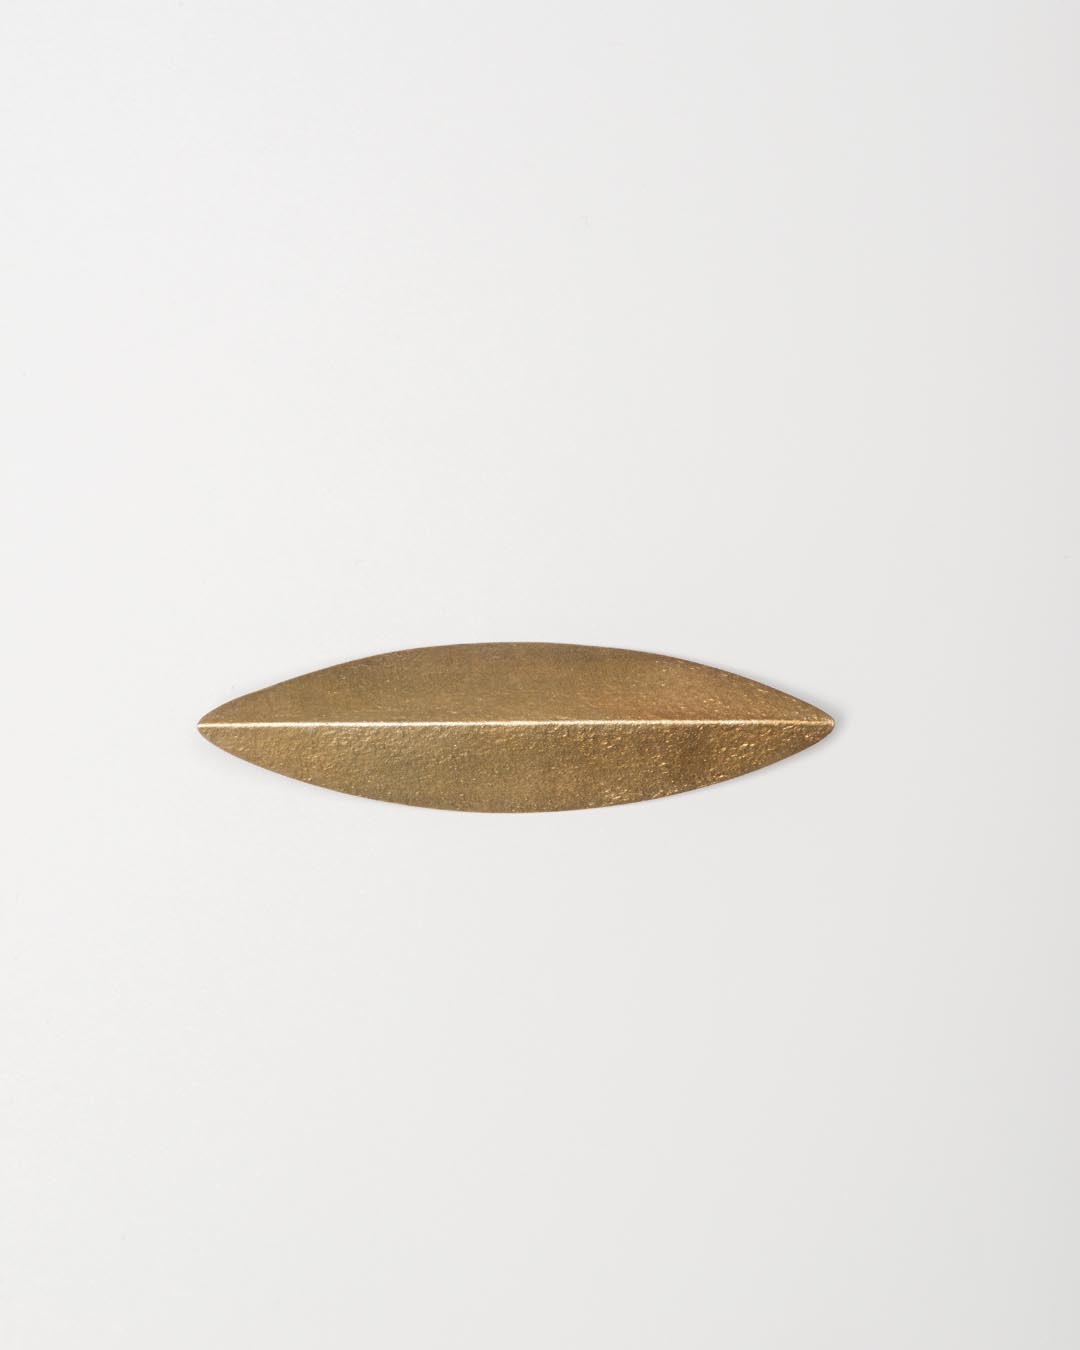 Yasuki Hiramatsu, untitled, brooch; gold-plated silver, 22 x 80 x 8 mm